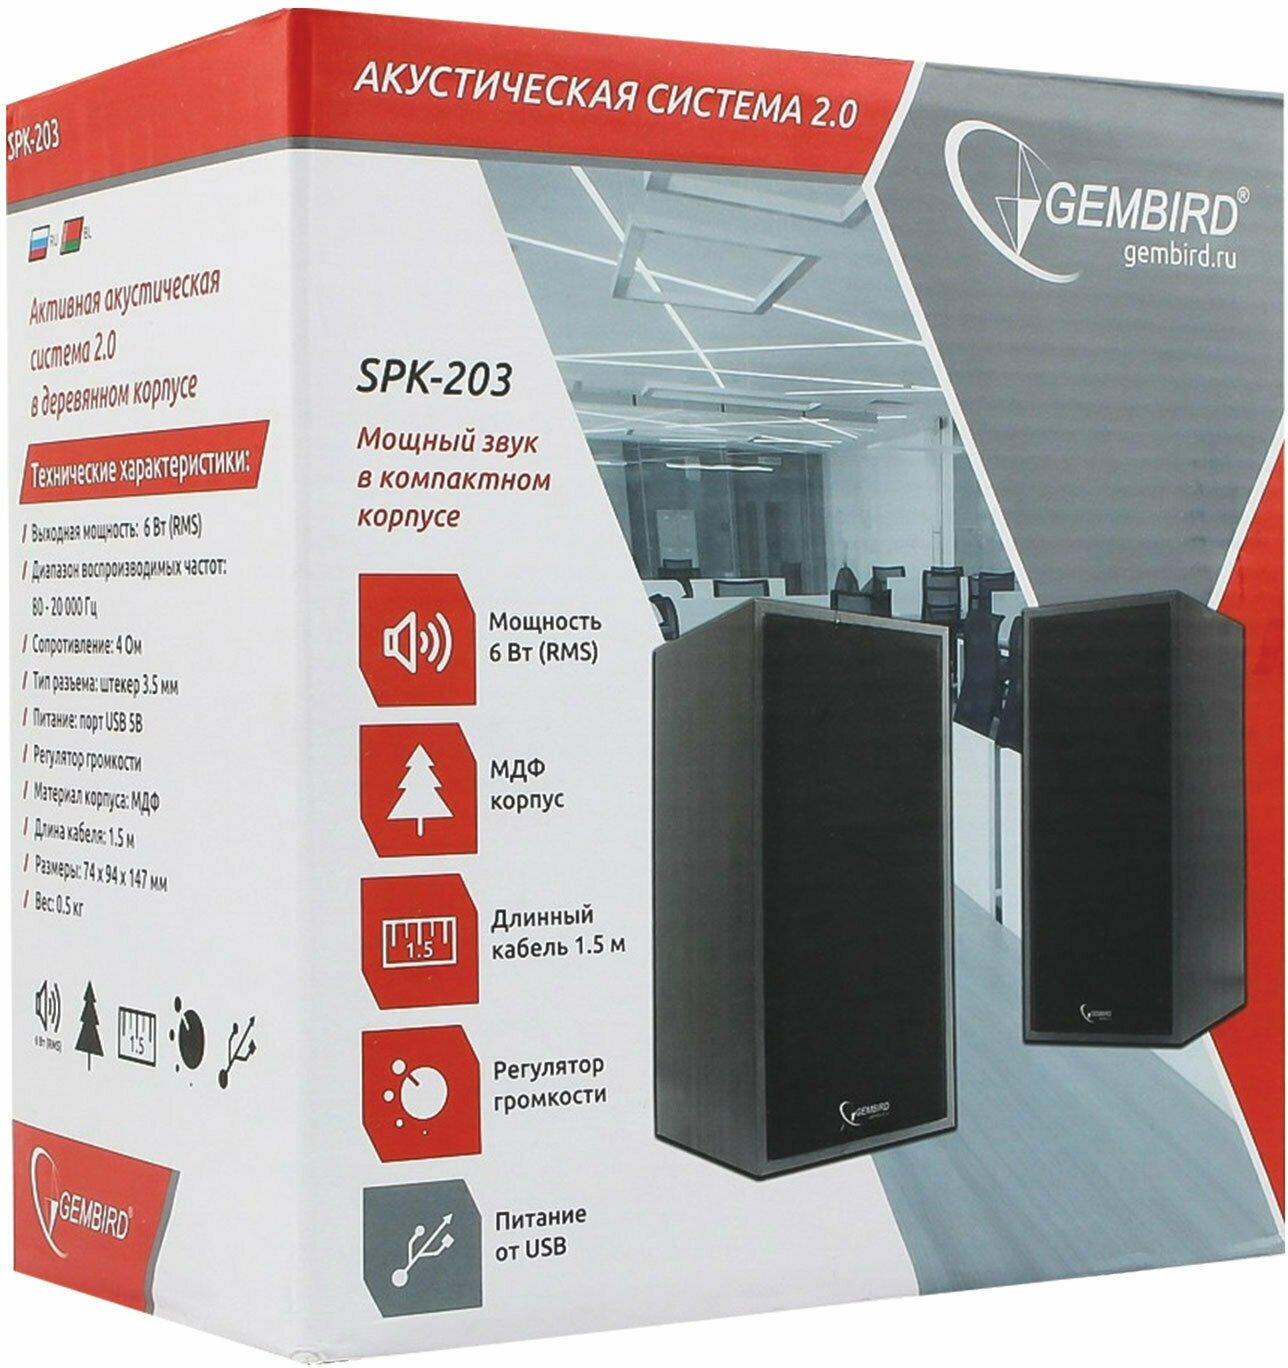 Акустическая система 2.0 Gembird, SPK-203, МДФ, 6 Вт, регулятор громкости, USB-питание, черный